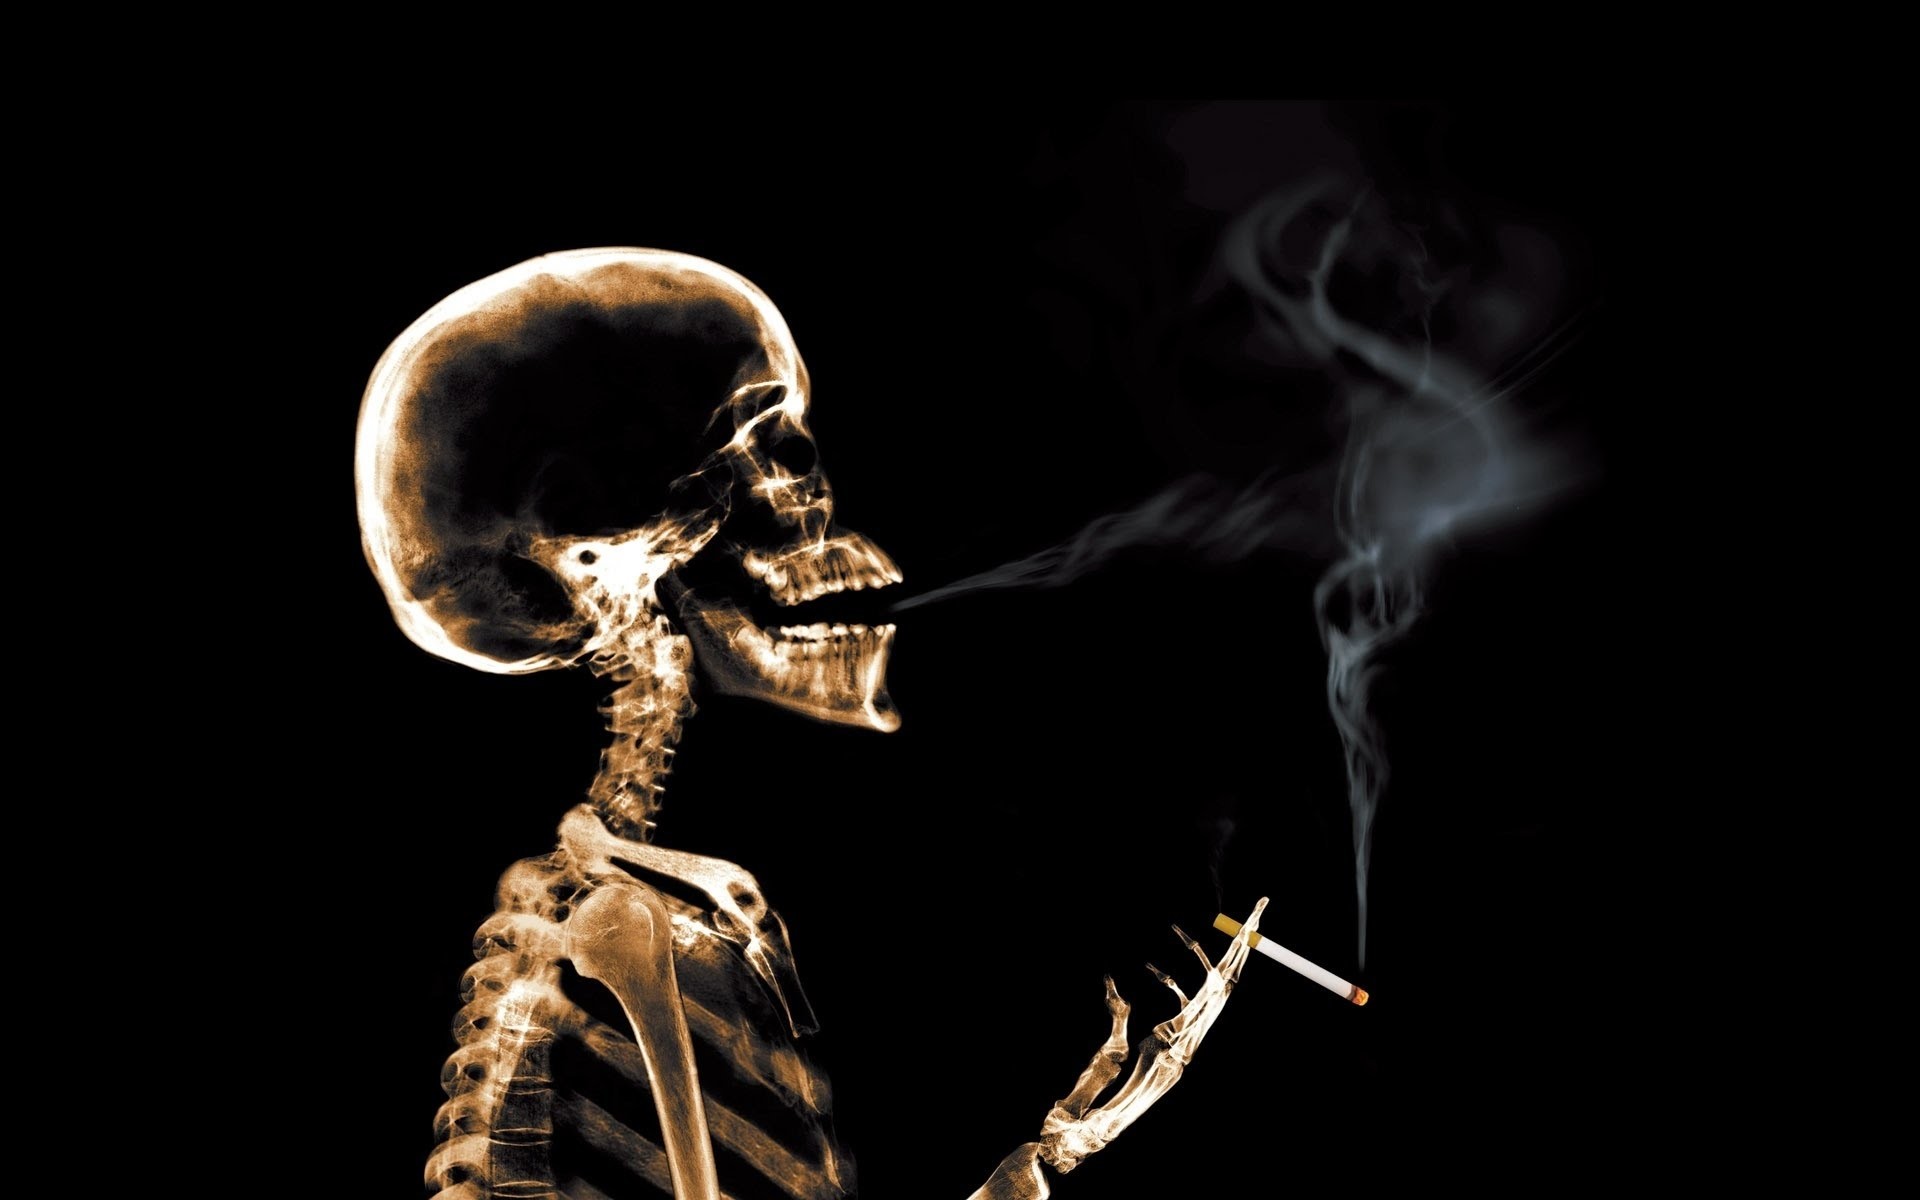 喫煙壁紙ダウンロード,スケルトン,人間,煙,人体,写真撮影